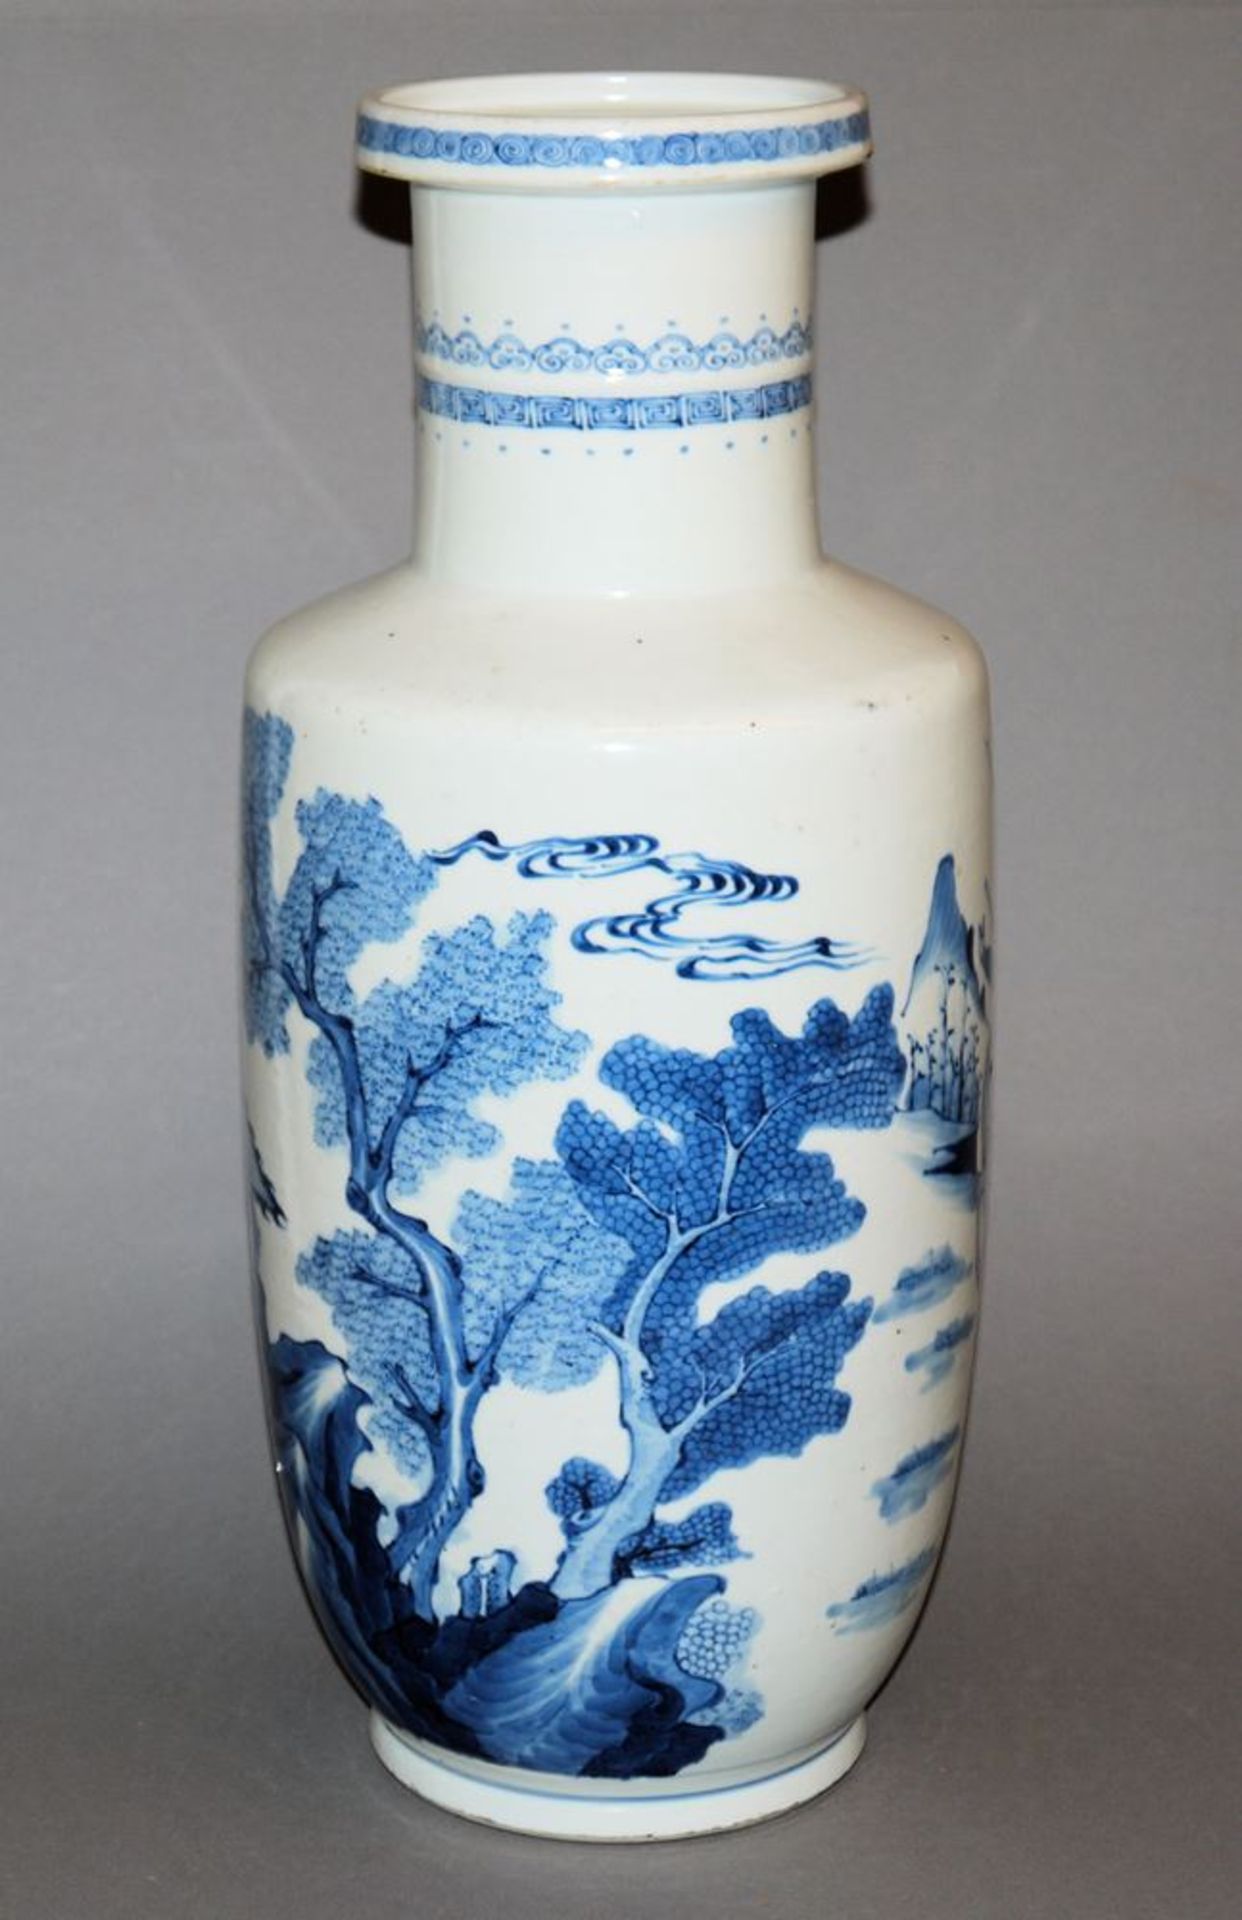 Große Blauweiß-Vase, Form Bangcui, wohl Guangxu-Zeit, China, Ende 19. Jh. - Bild 3 aus 5